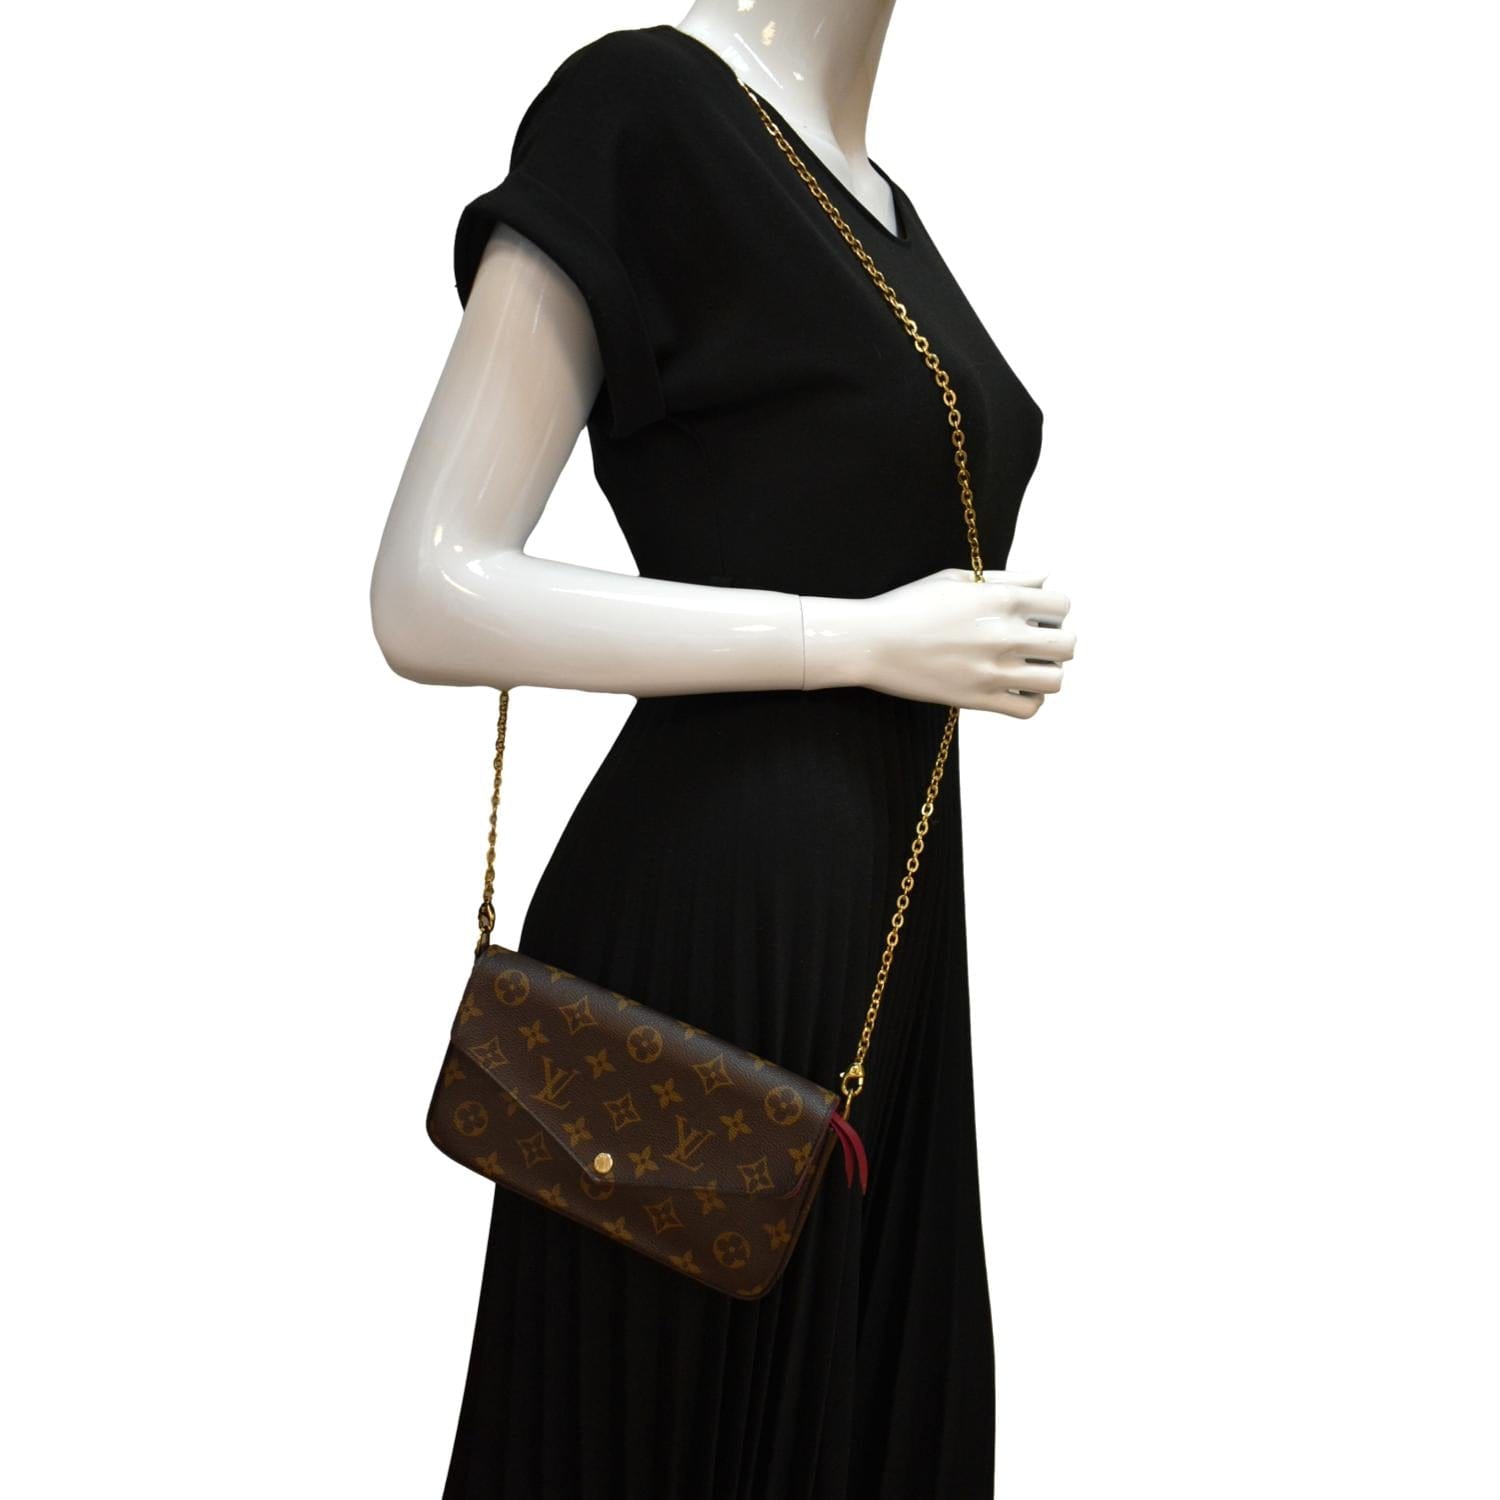 Louis Vuitton Felicie Pochette Monogram Canvas - ShopStyle Crossbody Bags